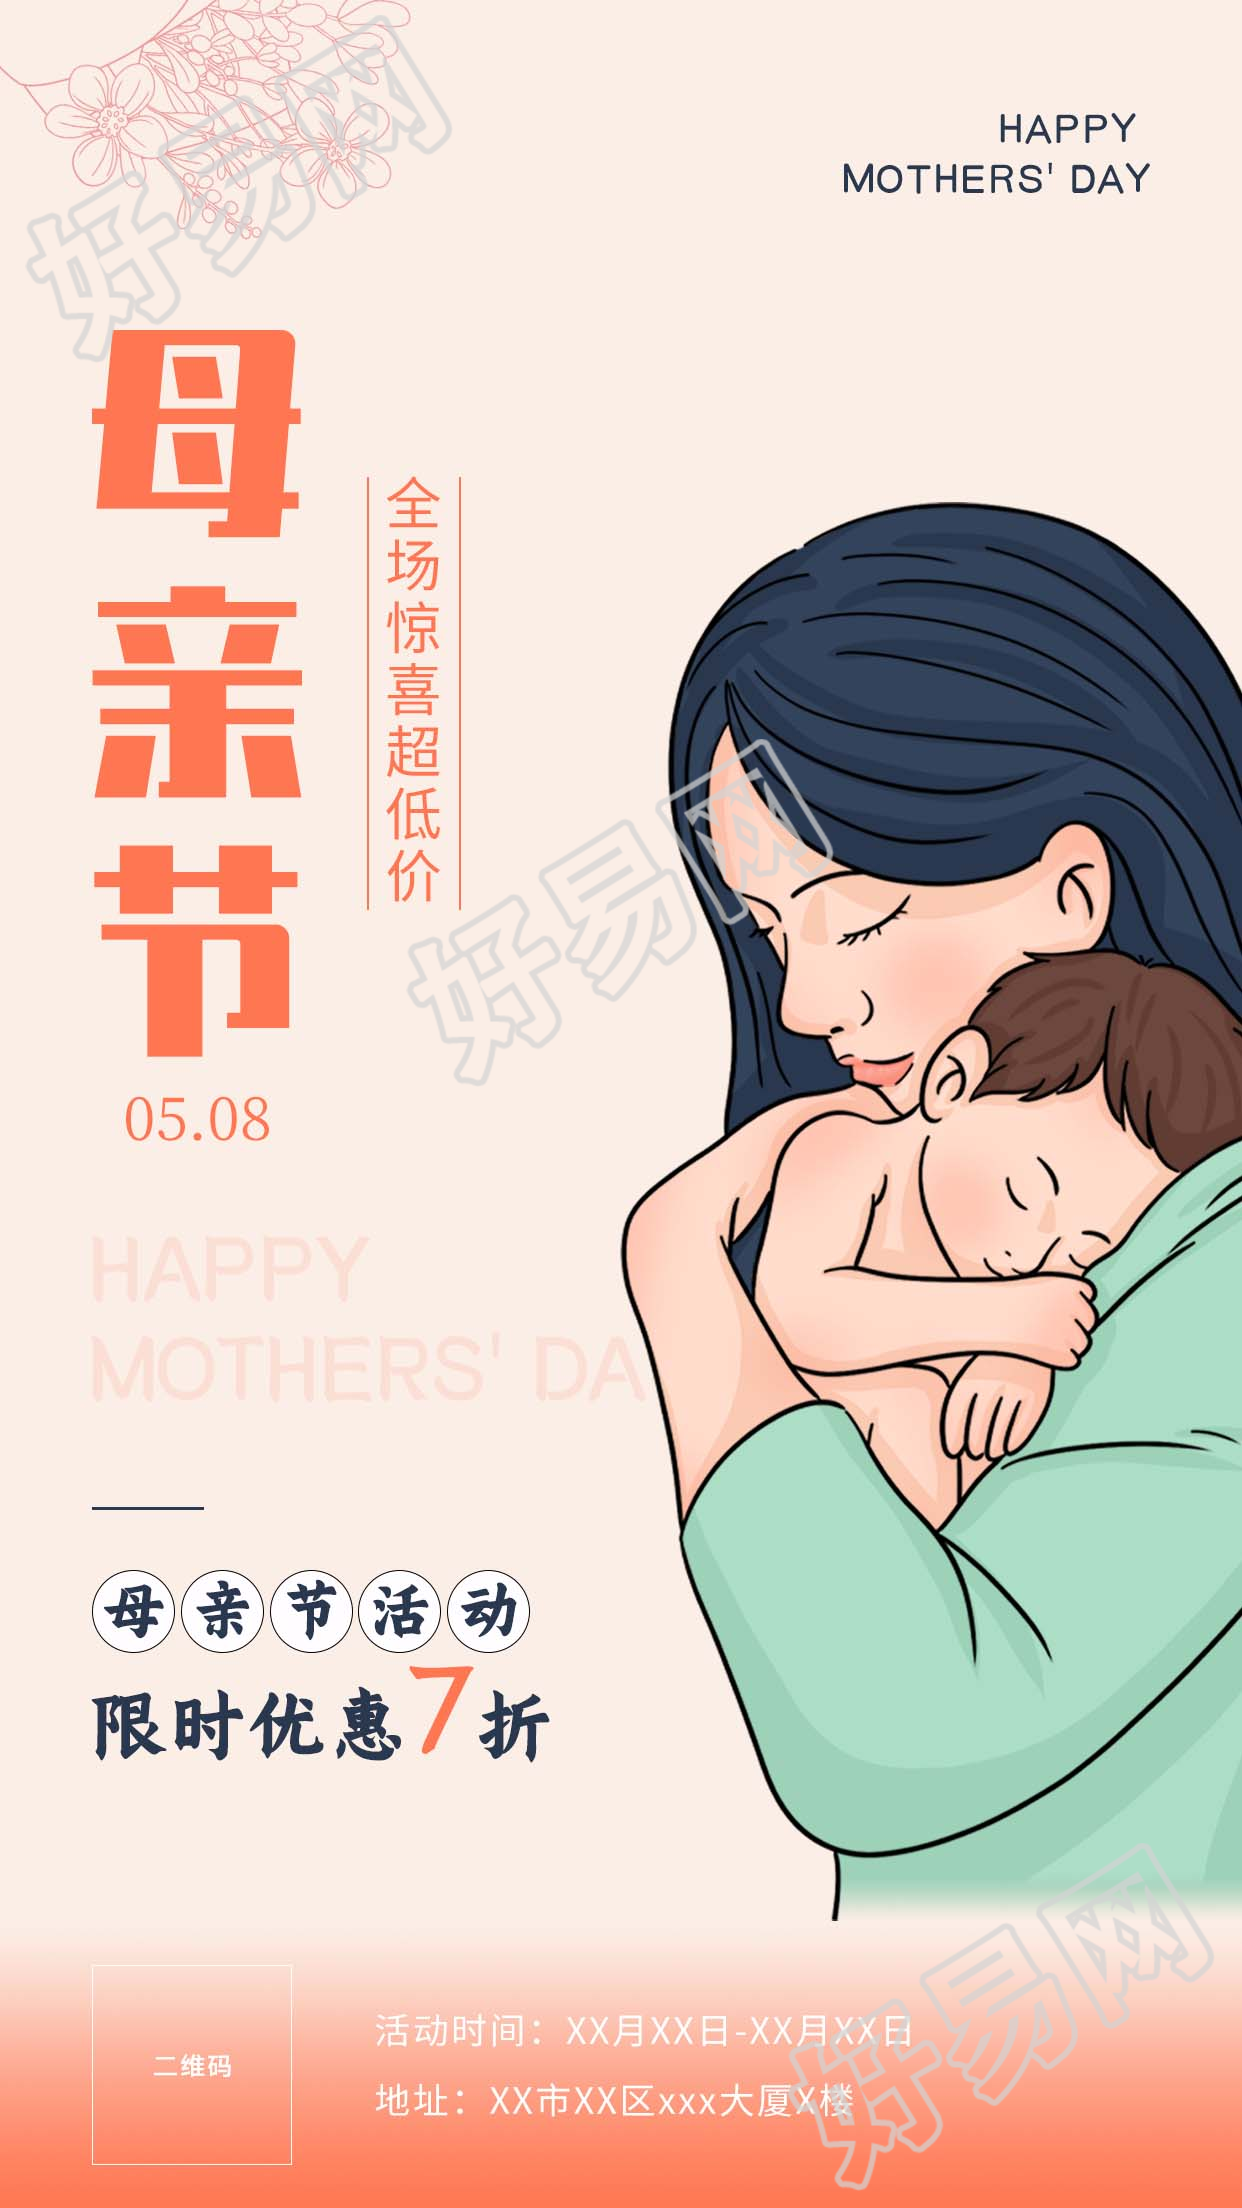 母亲节钜惠母婴专场营销宣传海报